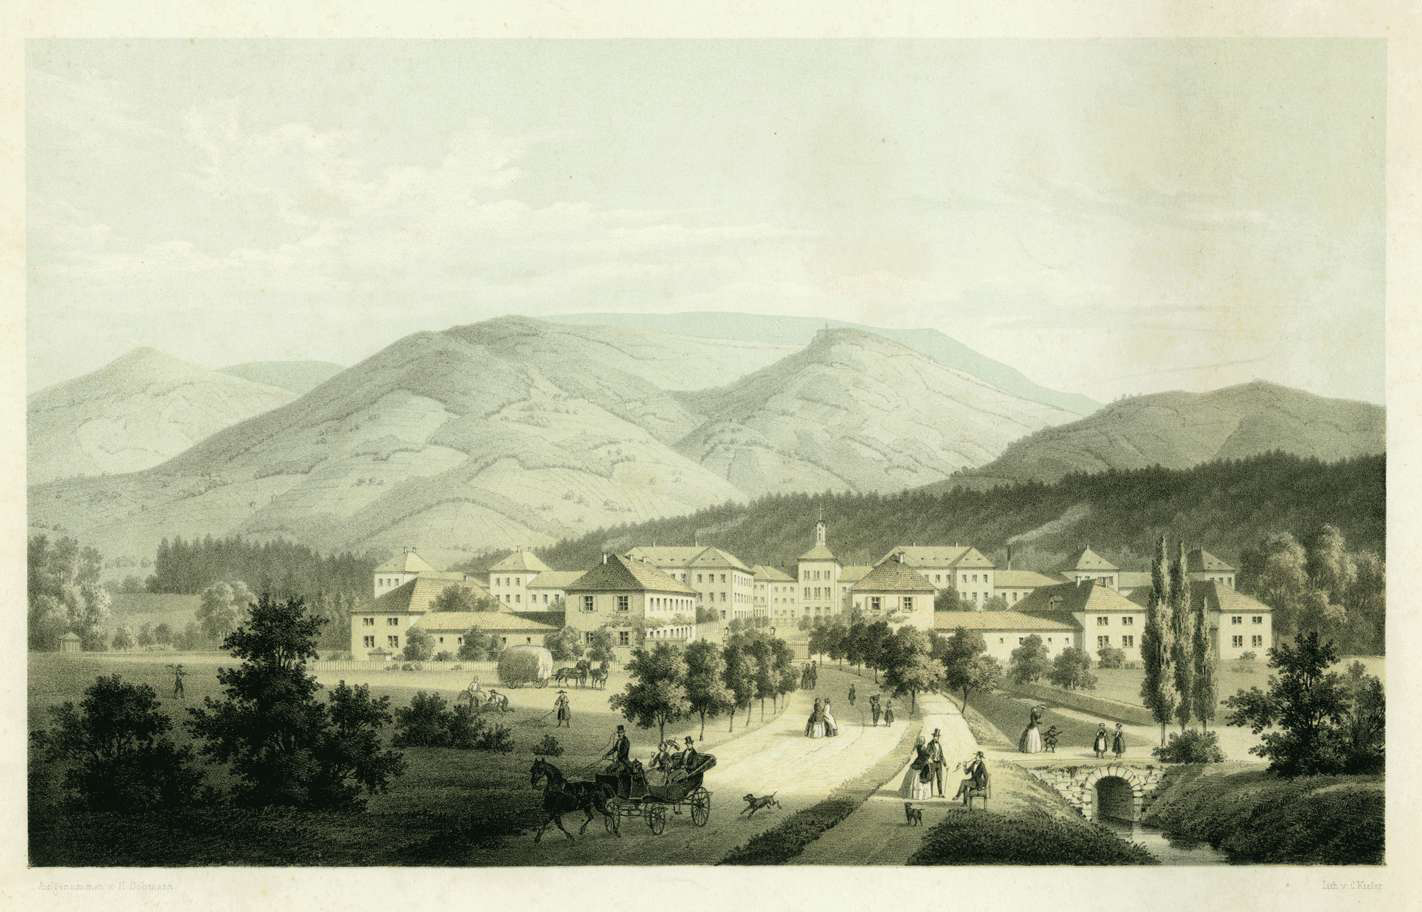 Die Anstalt Illenau mit Parkanlagen um 1860. [Quelle: Landesarchiv BW, GLAK J-B Illenau 1]